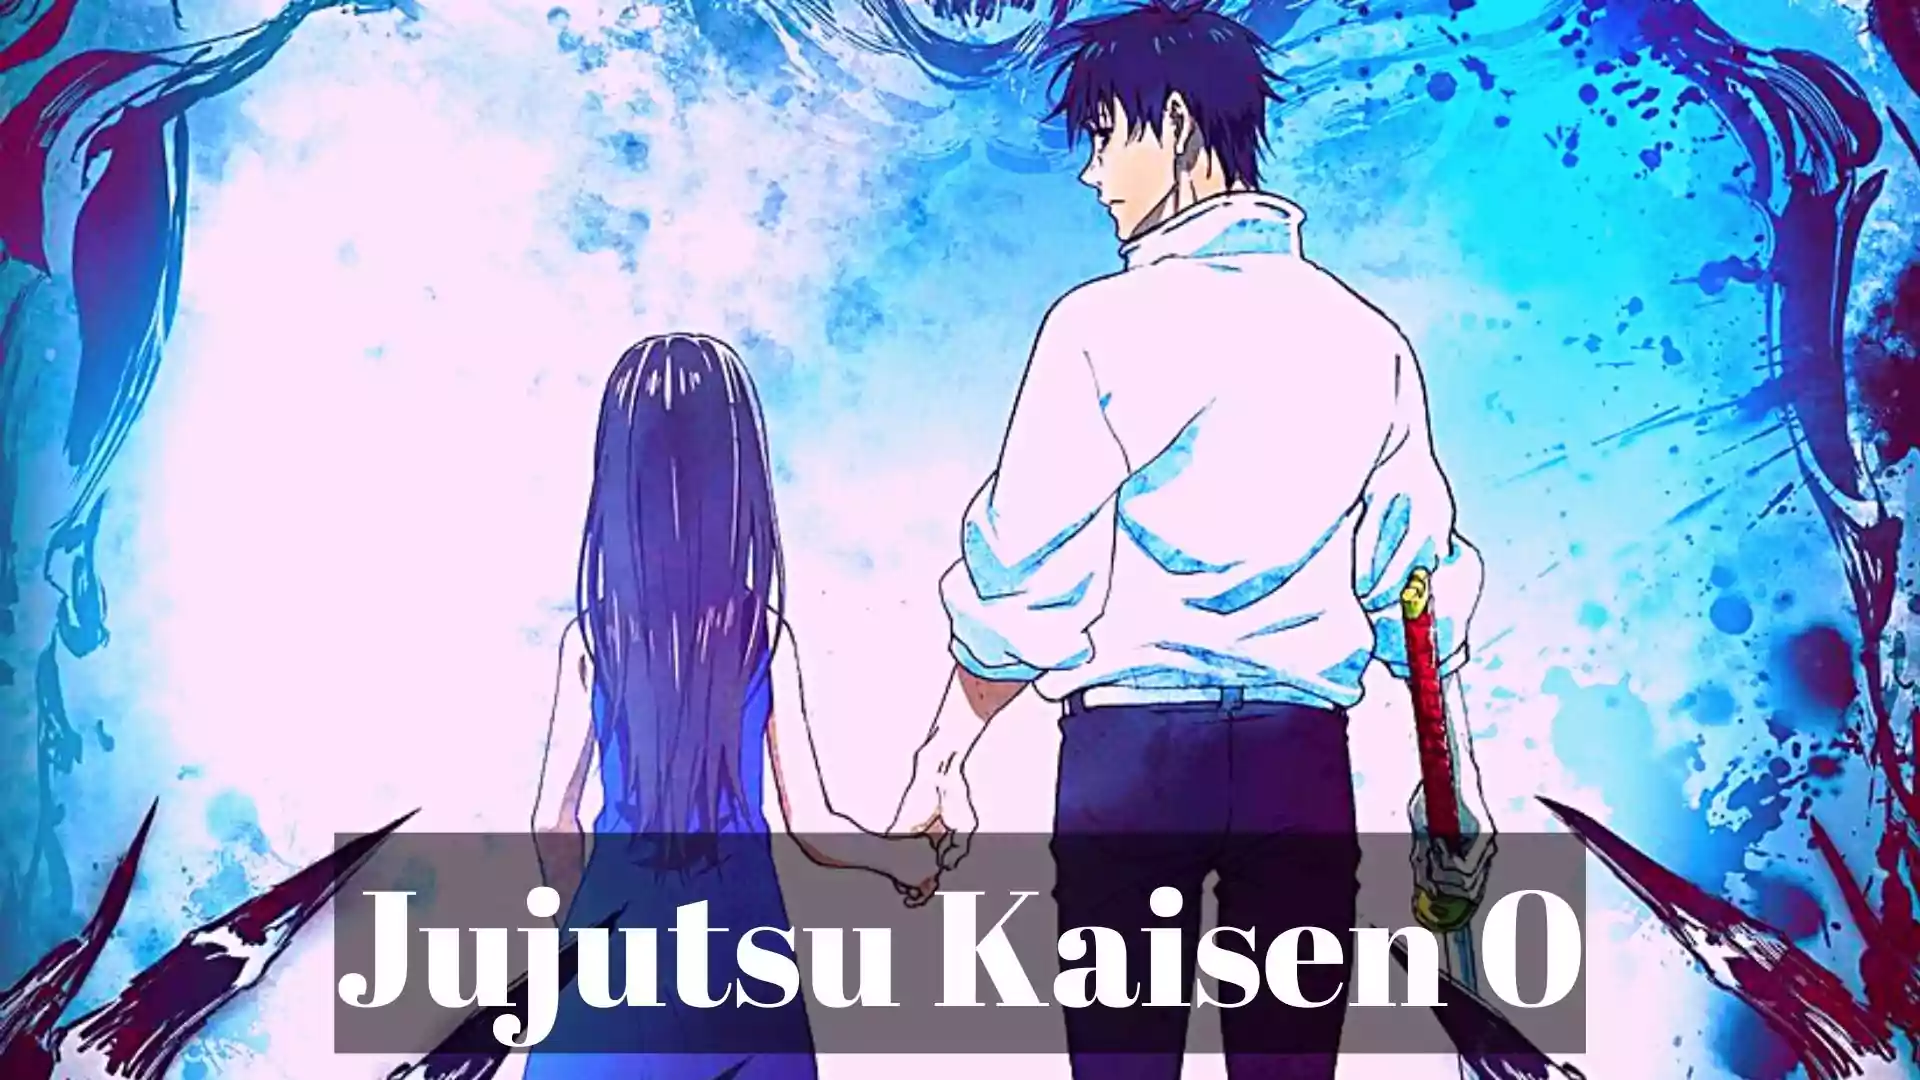 Jujutsu Kaisen 0 Funimation Image